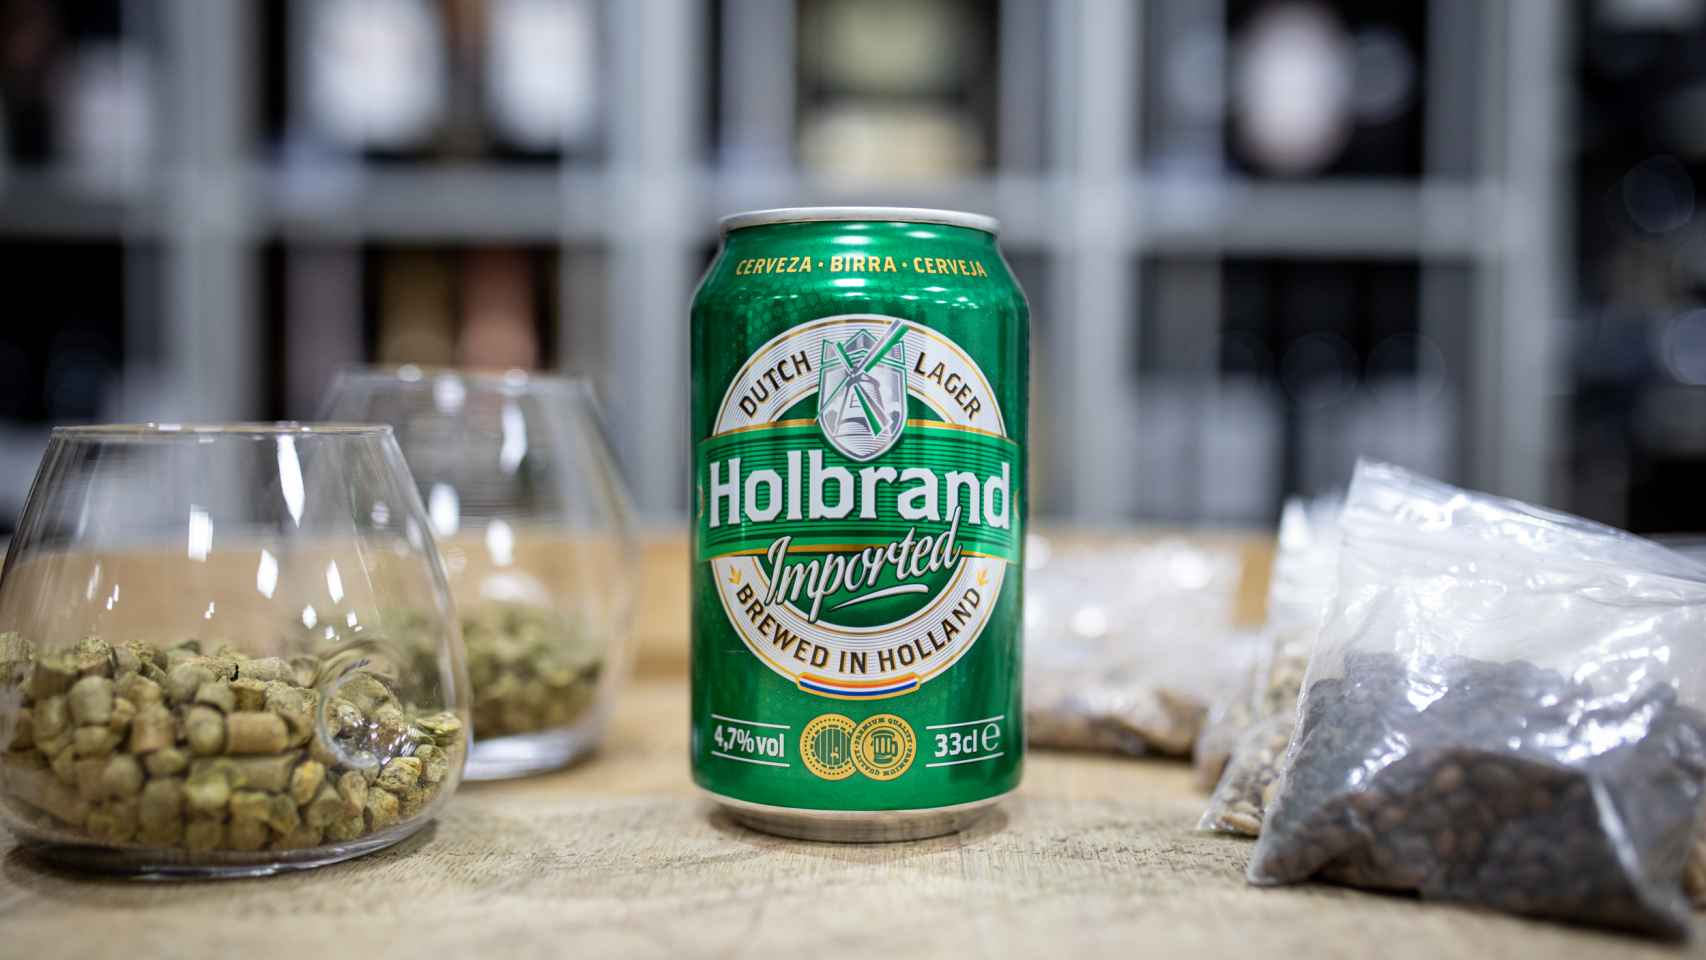 La cerveza Holbrand, la marca blanca de Alcampo.